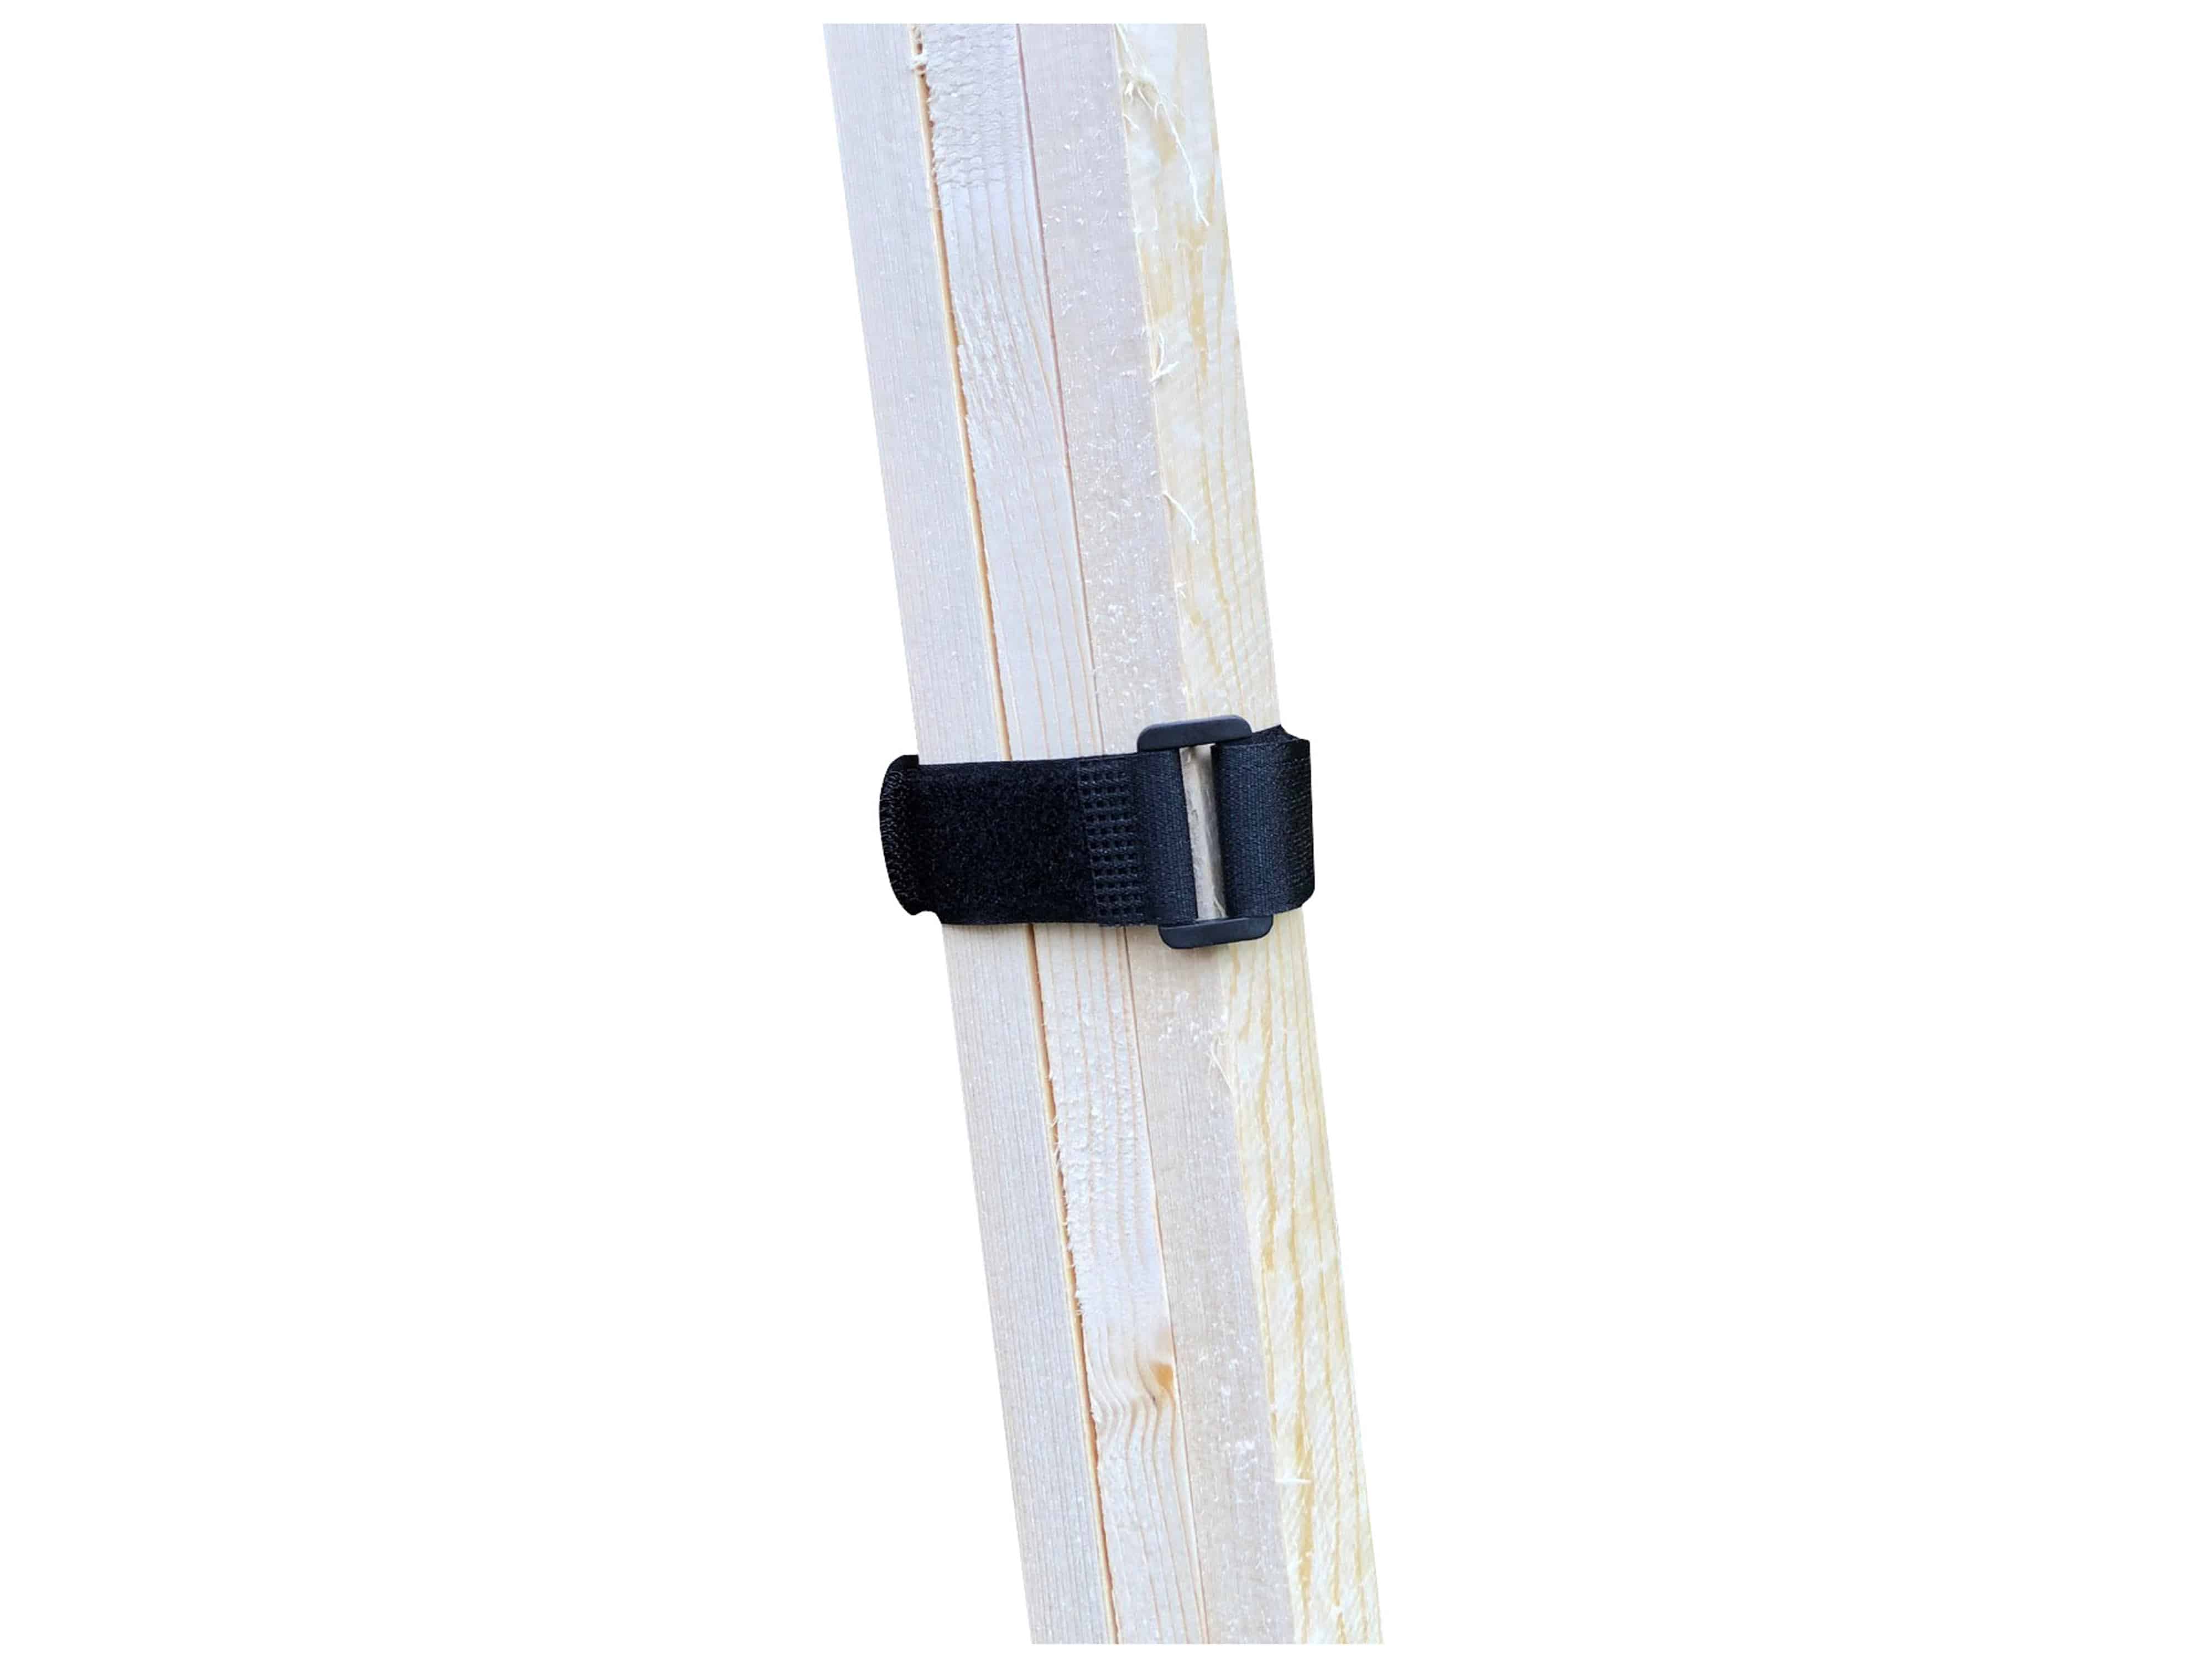 CHILITEC Klettband-Set mit Öse, 5 Stück, 50x2 cm, schwarz